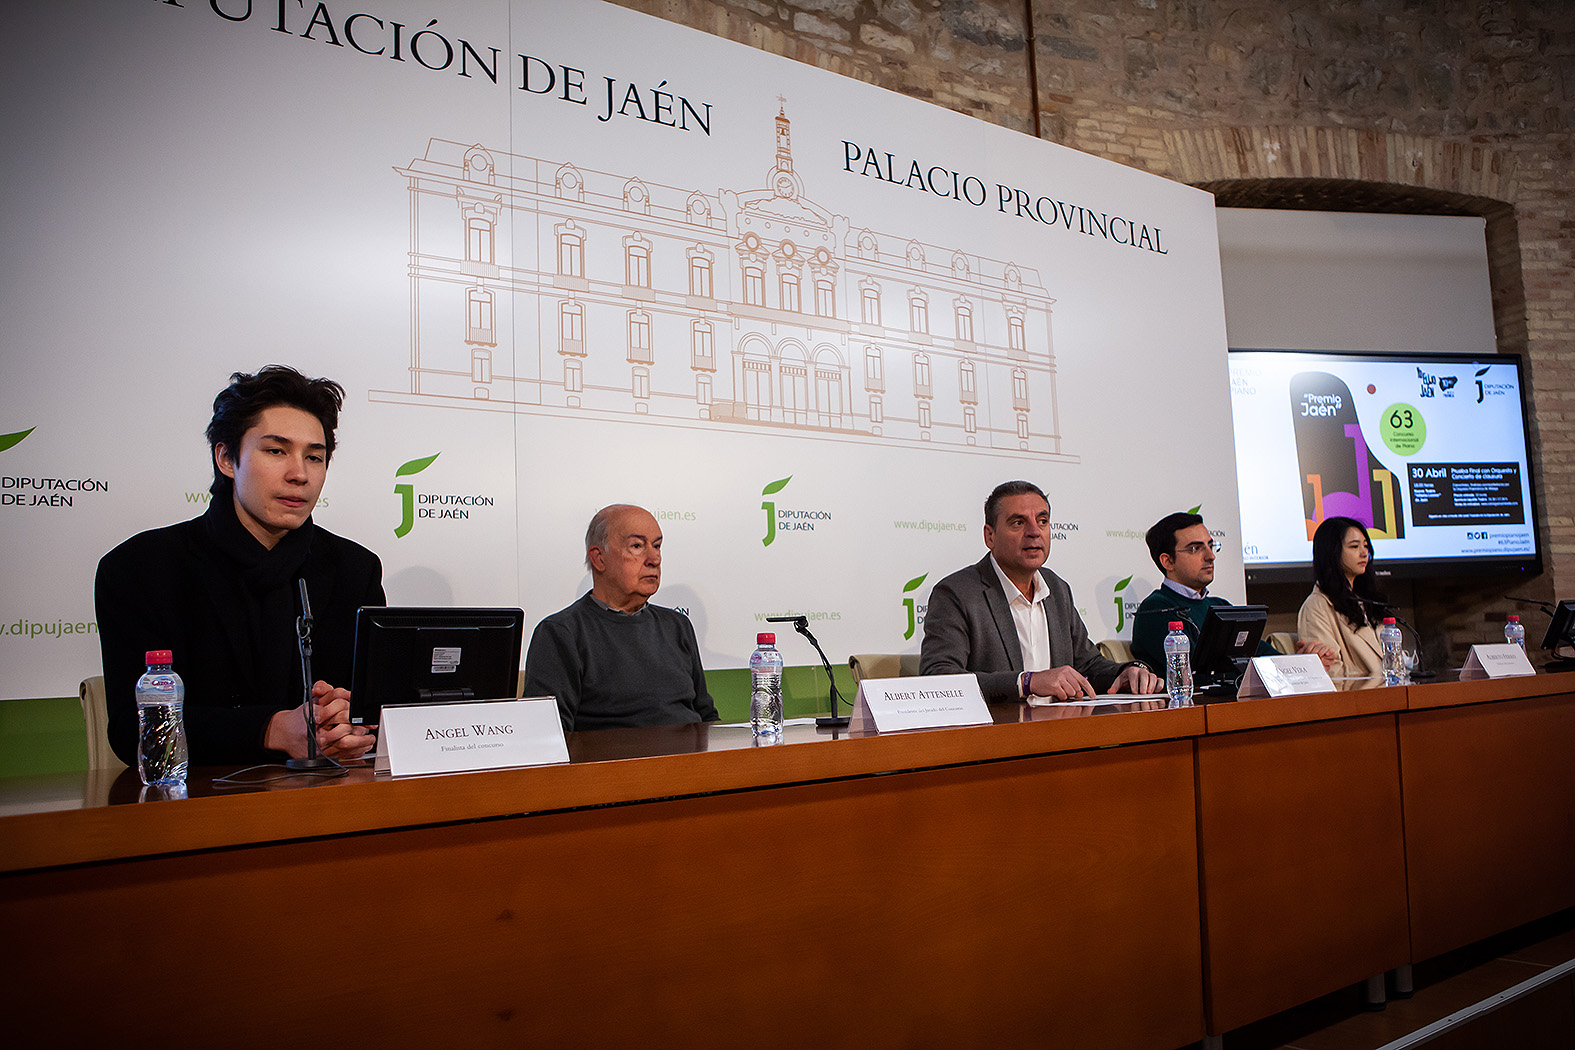 Foto de la noticia: Los finalistas valoran la organización del Premio “Jaén” de Piano, que celebra mañana su prueba decisiva